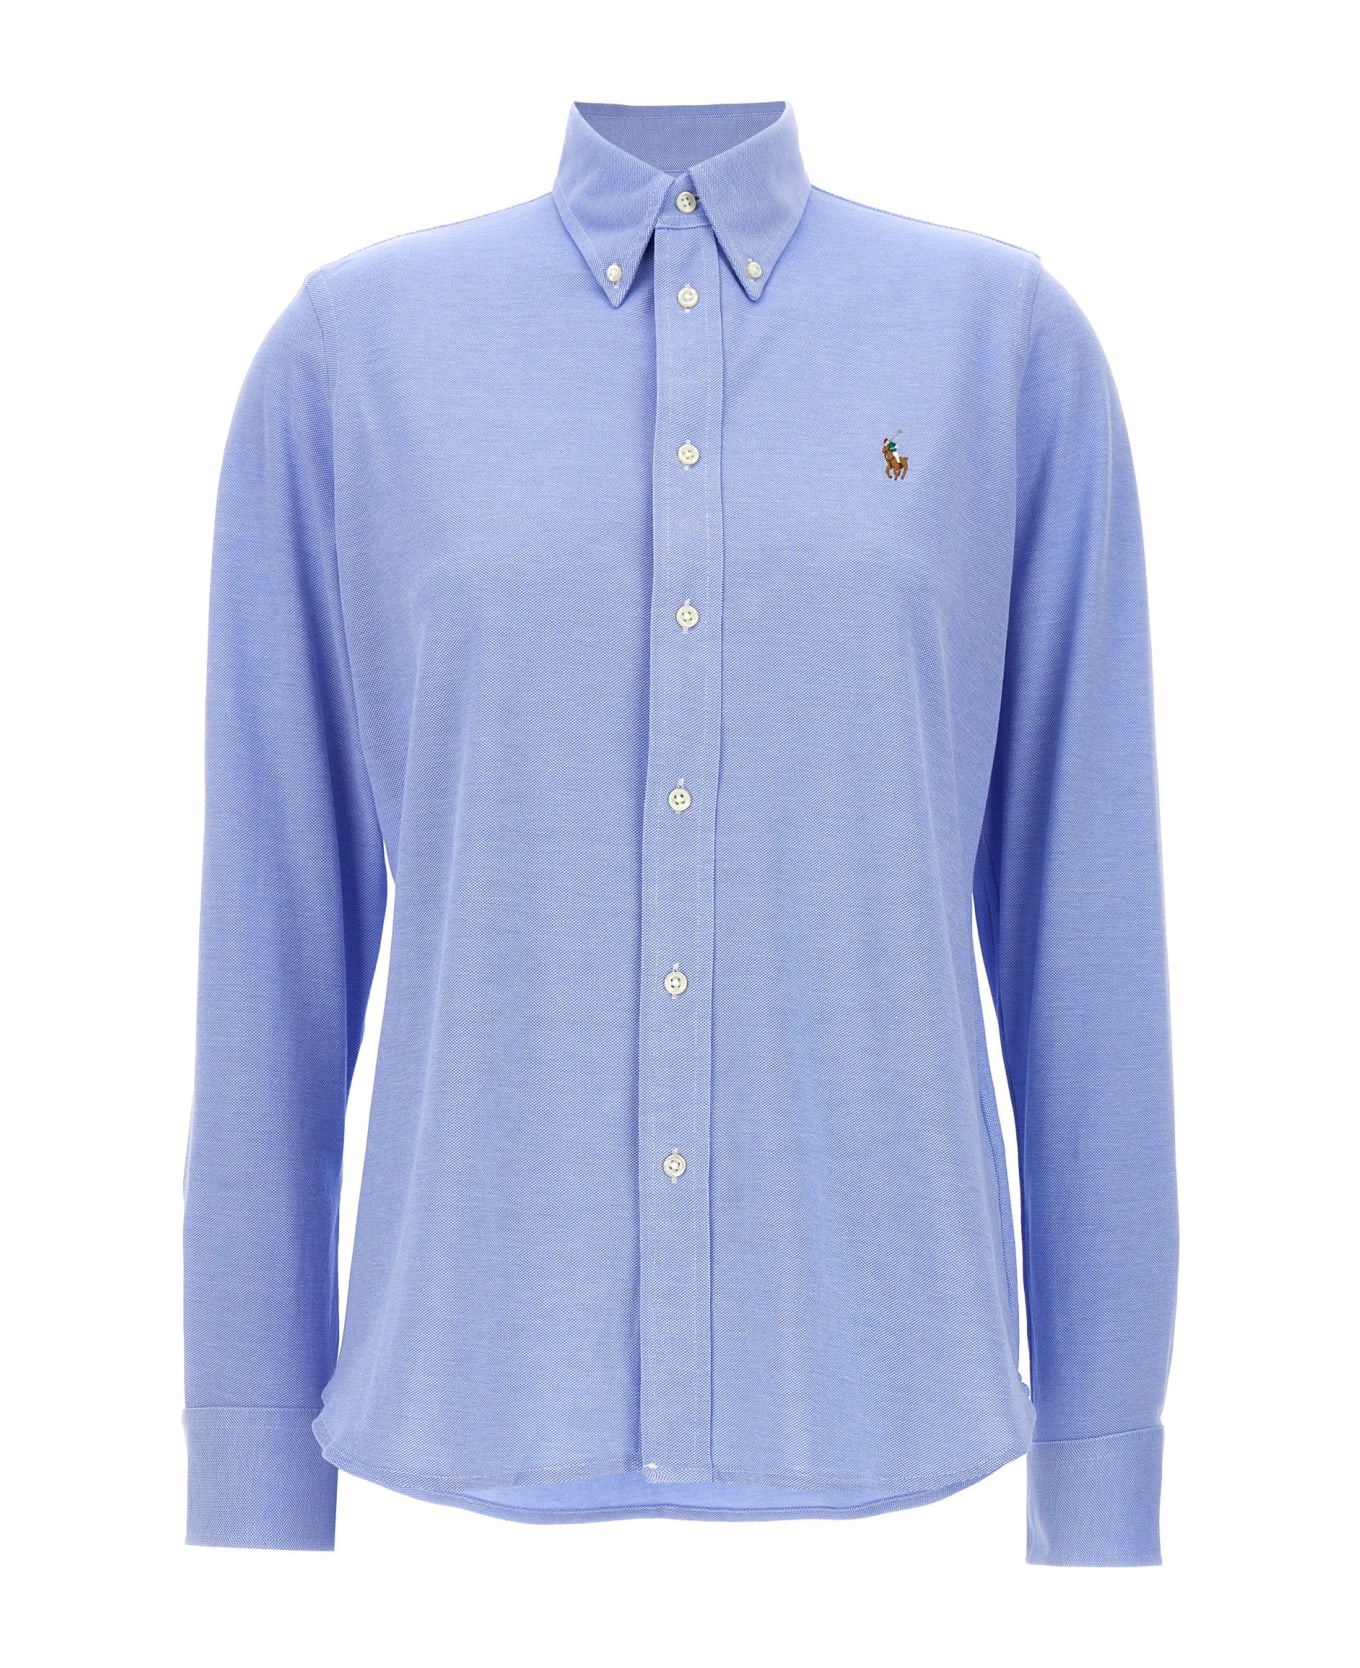 Ralph Lauren 'heidi' Shirt - Light Blue